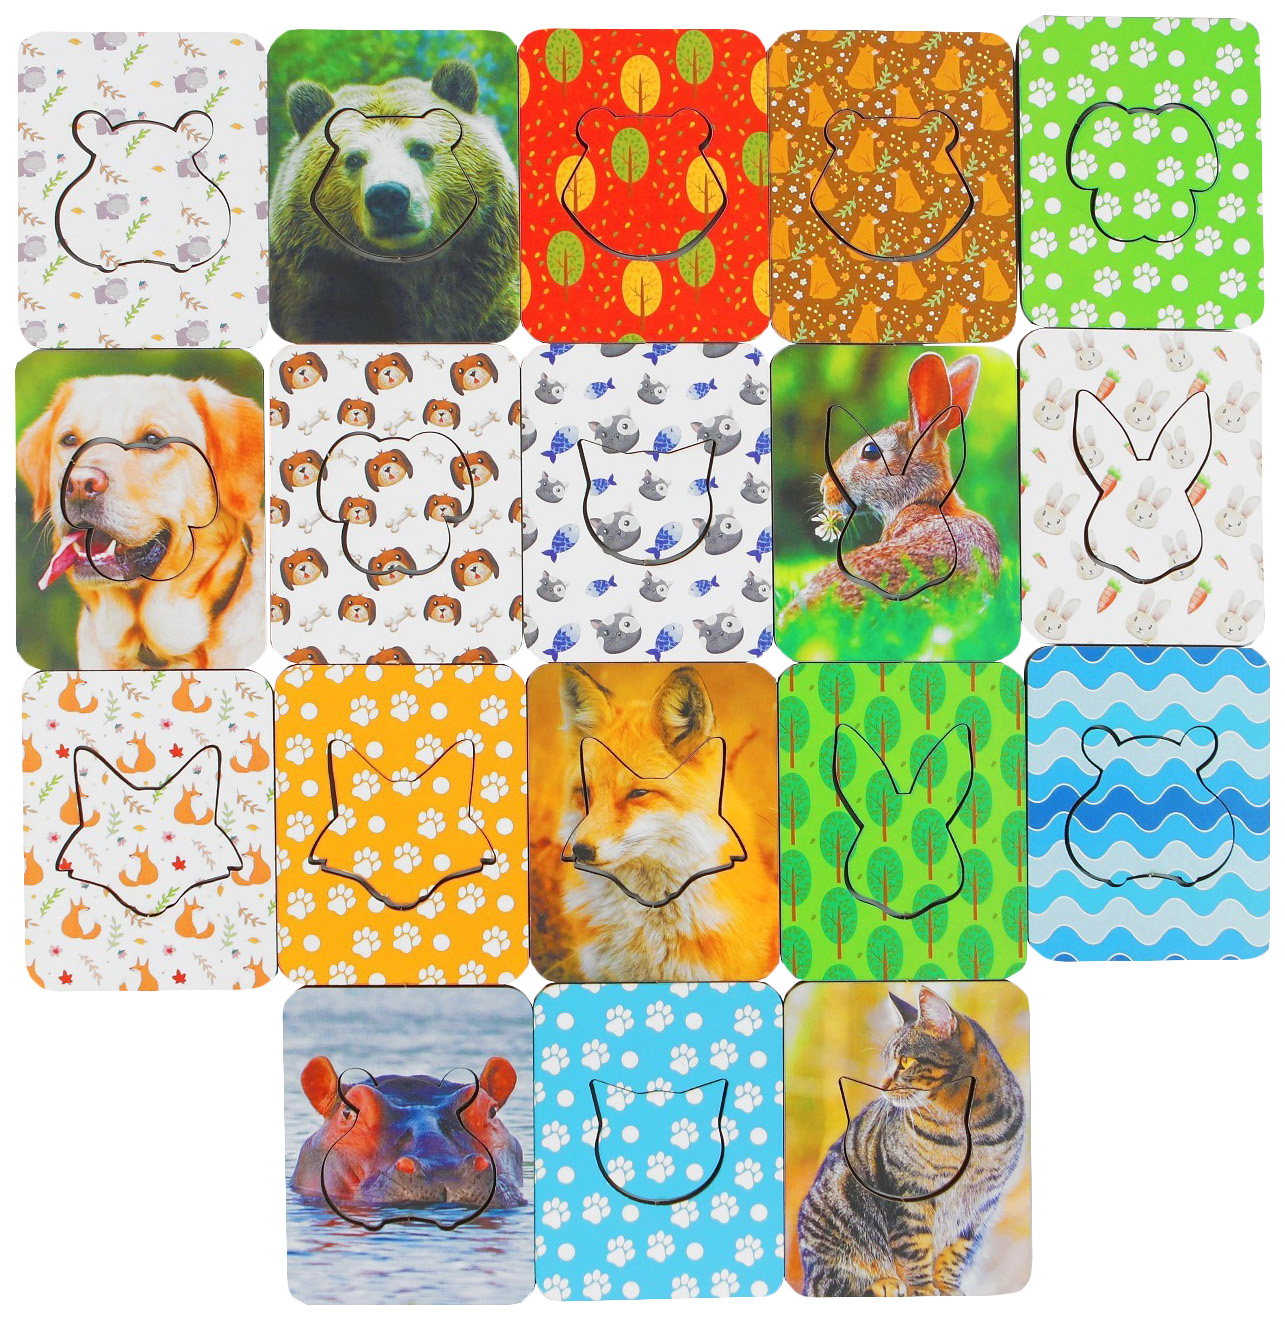 Доски Сегена «Животные», набор 18 шт. Woodland (Сибирский сувенир) комодик woodland животные 3912730